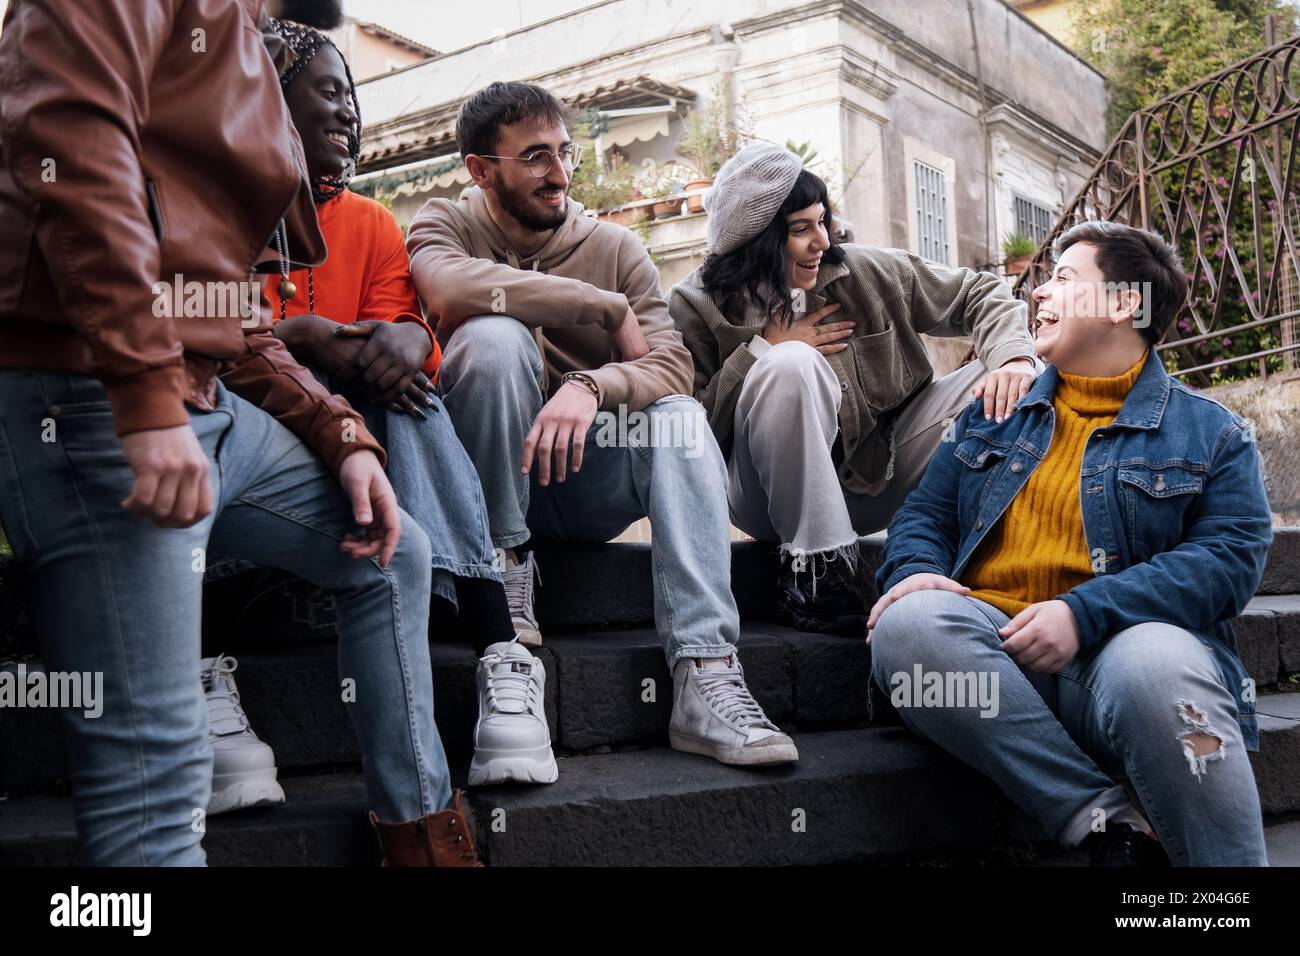 Eine Gruppe multikultureller Freunde, die auf den Stufen der Stadt lachen und Freude teilen - Junge Erwachsene zeigen den Geist der städtischen Jugend und die vielfältige Freundlichkeit Stockfoto